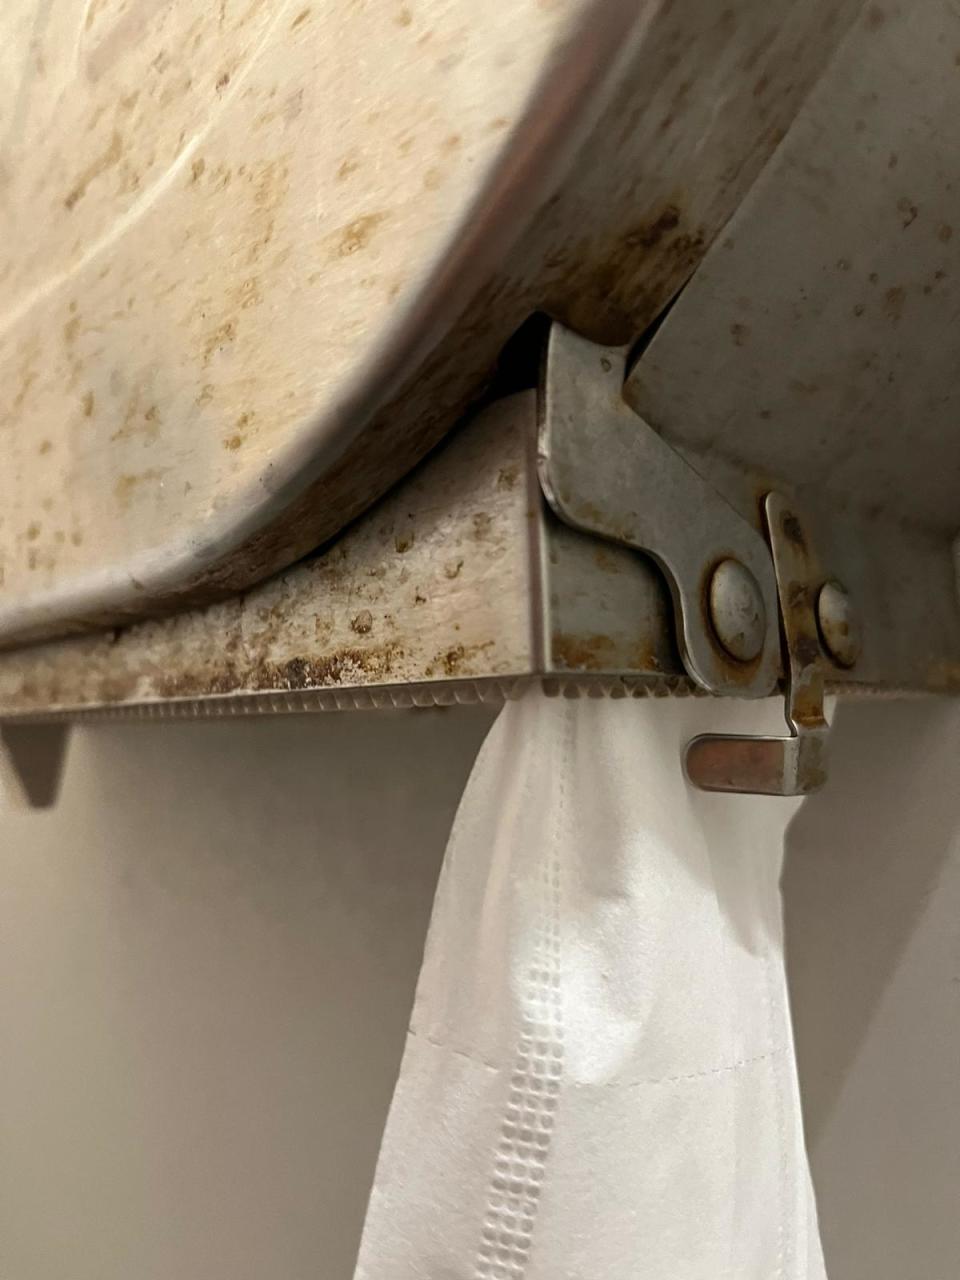 廁紙箱鏽漬緊貼紙巾，員工擔心使用時有健康風險。